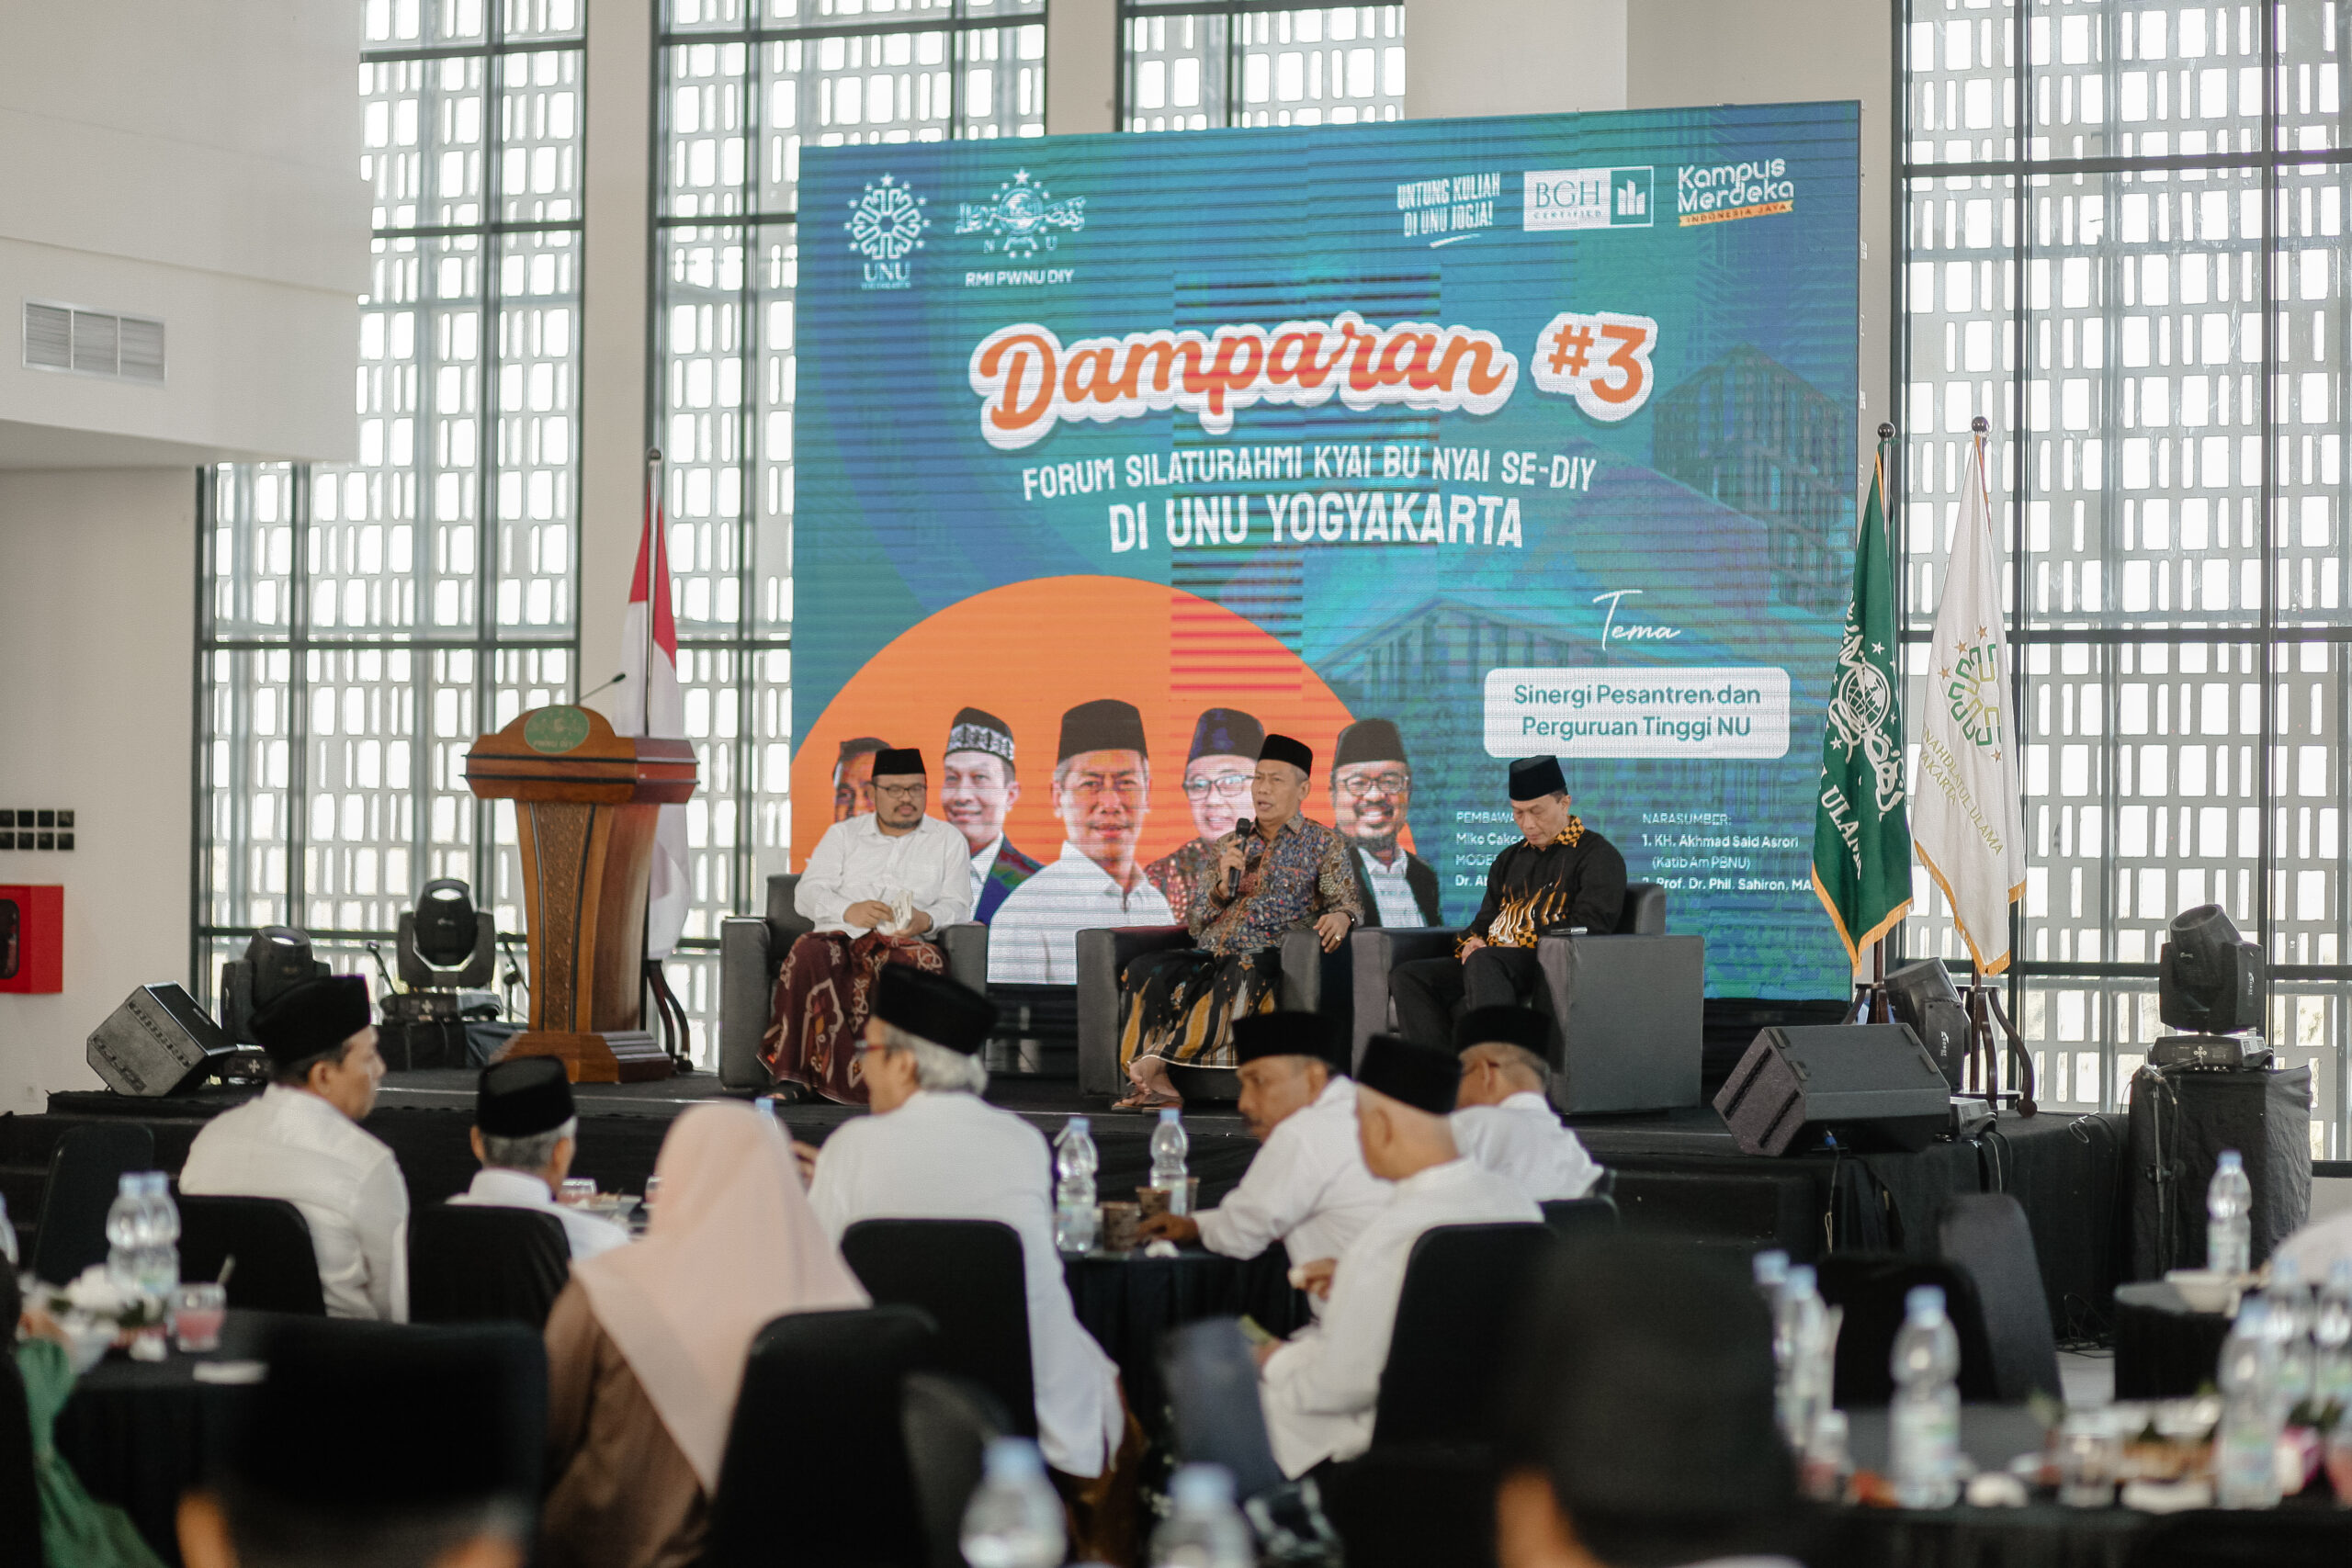 UNU Yogyakarta Tuan Rumah Forum Pertemuan Kiai – Nyai se- DIY: Sinergi Kampus dan Pesantren, UNU Yogyakarta Sediakan Ratusan Beasiswa untuk Santri